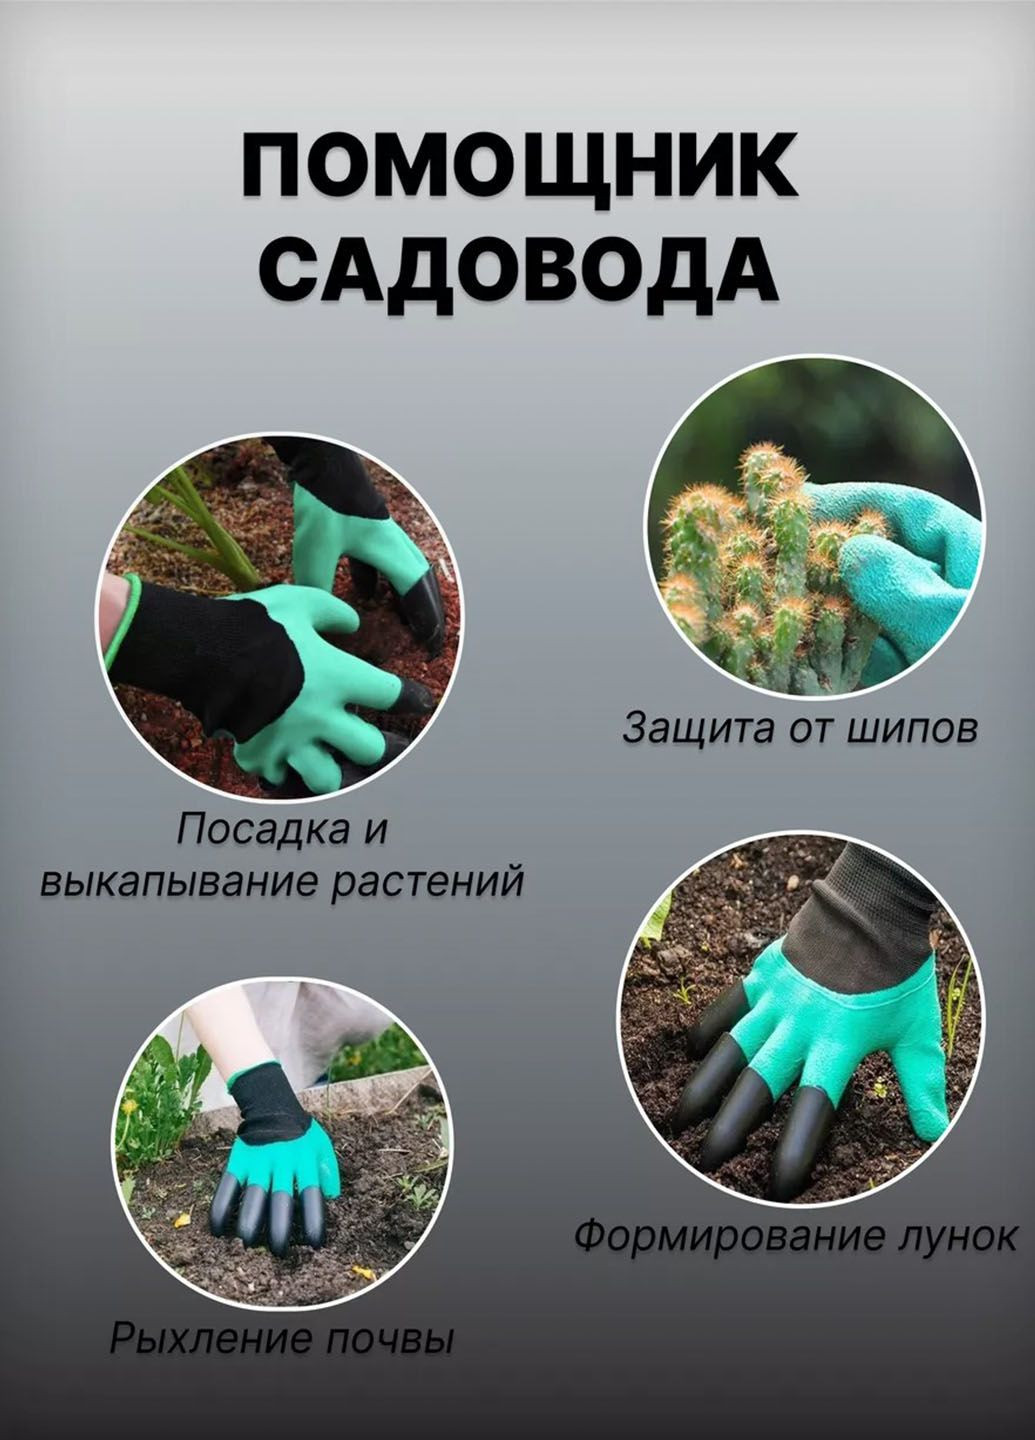 Рукавички садові Garden Genie Gloves для саду та городу з кігтями Idea (292652831)